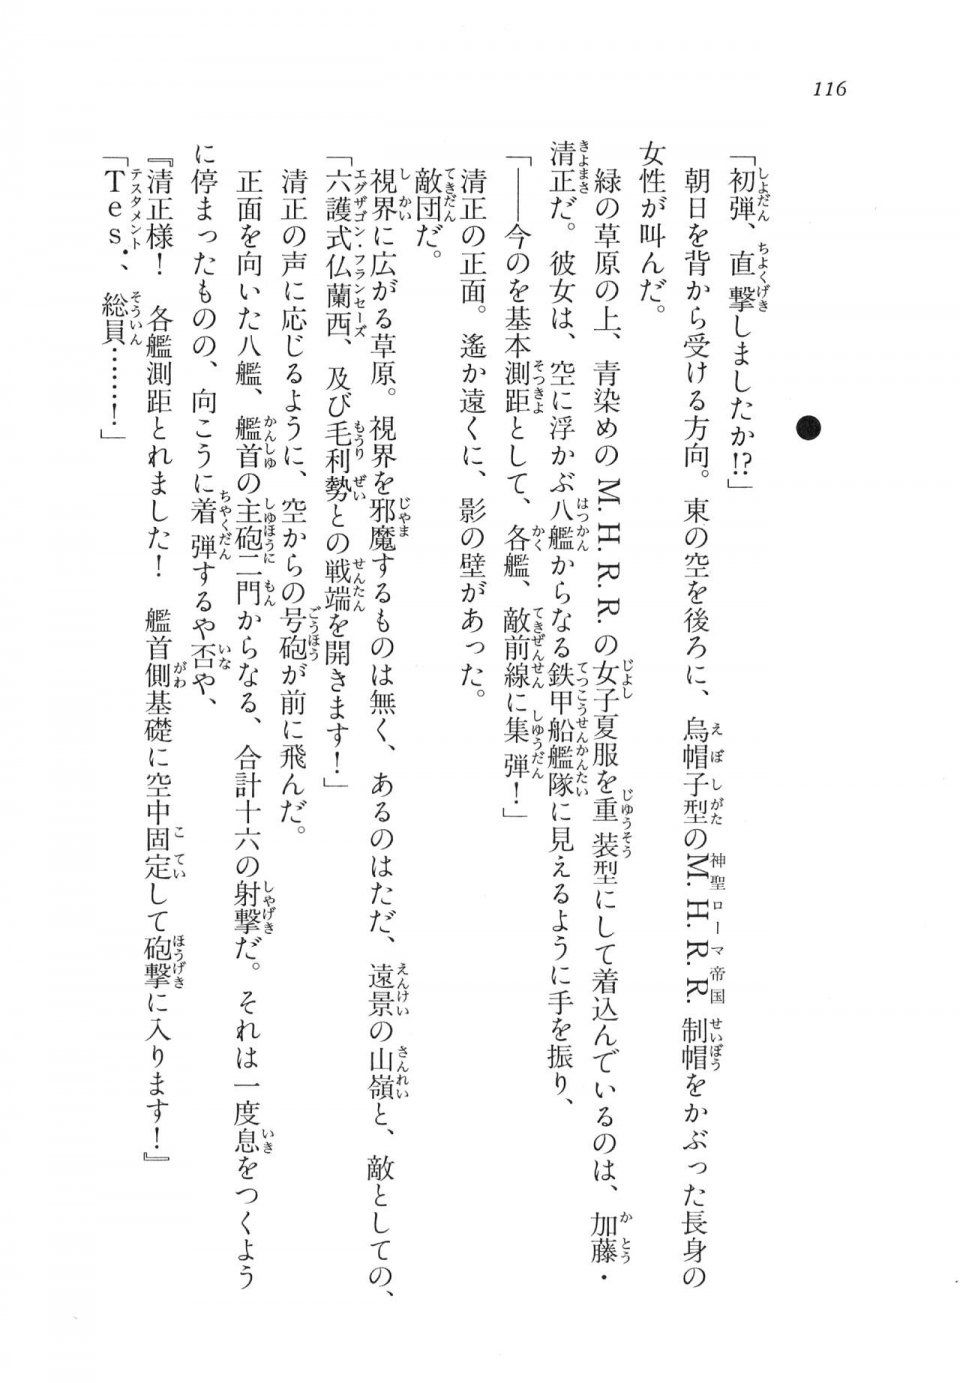 Kyoukai Senjou no Horizon LN Vol 11(5A) - Photo #116